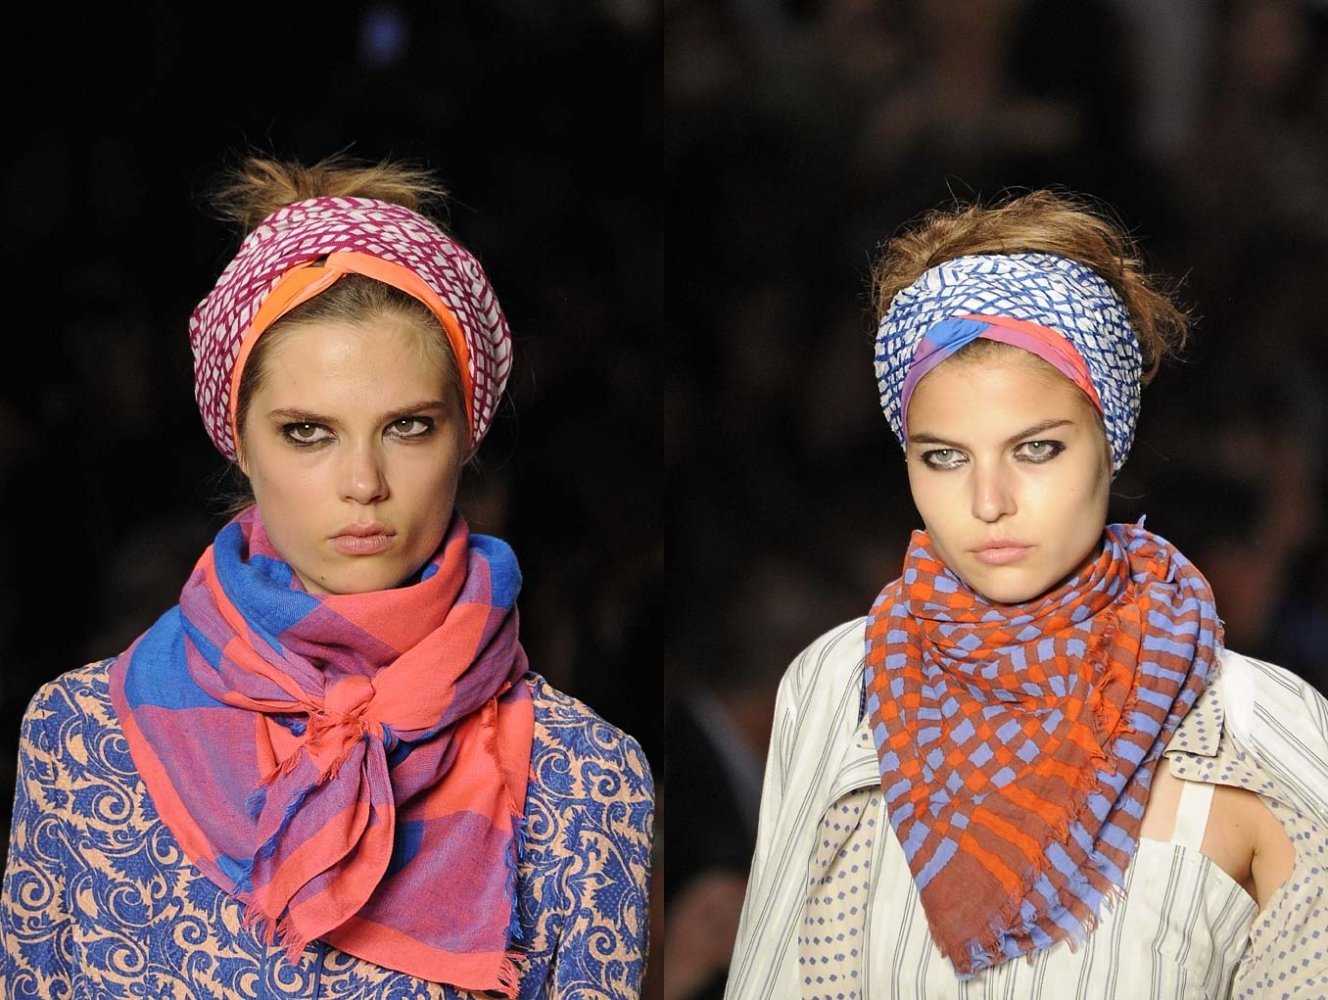 Как завязать платок на голове — примеры и советы - леди стиль жизни